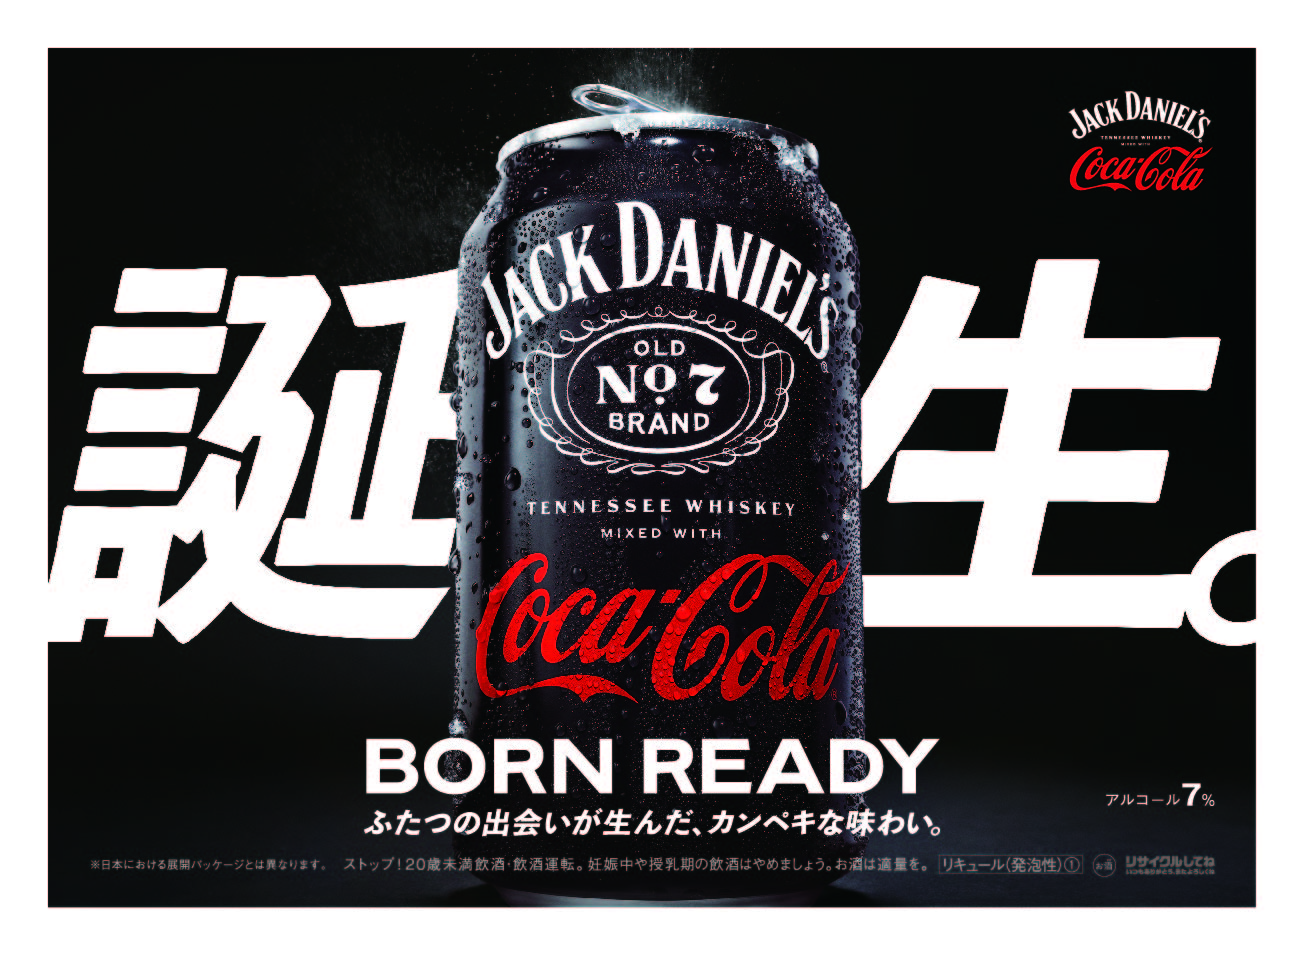 コカ・コーラ」を使った初のアルコール製品が日本上陸 「ジャック